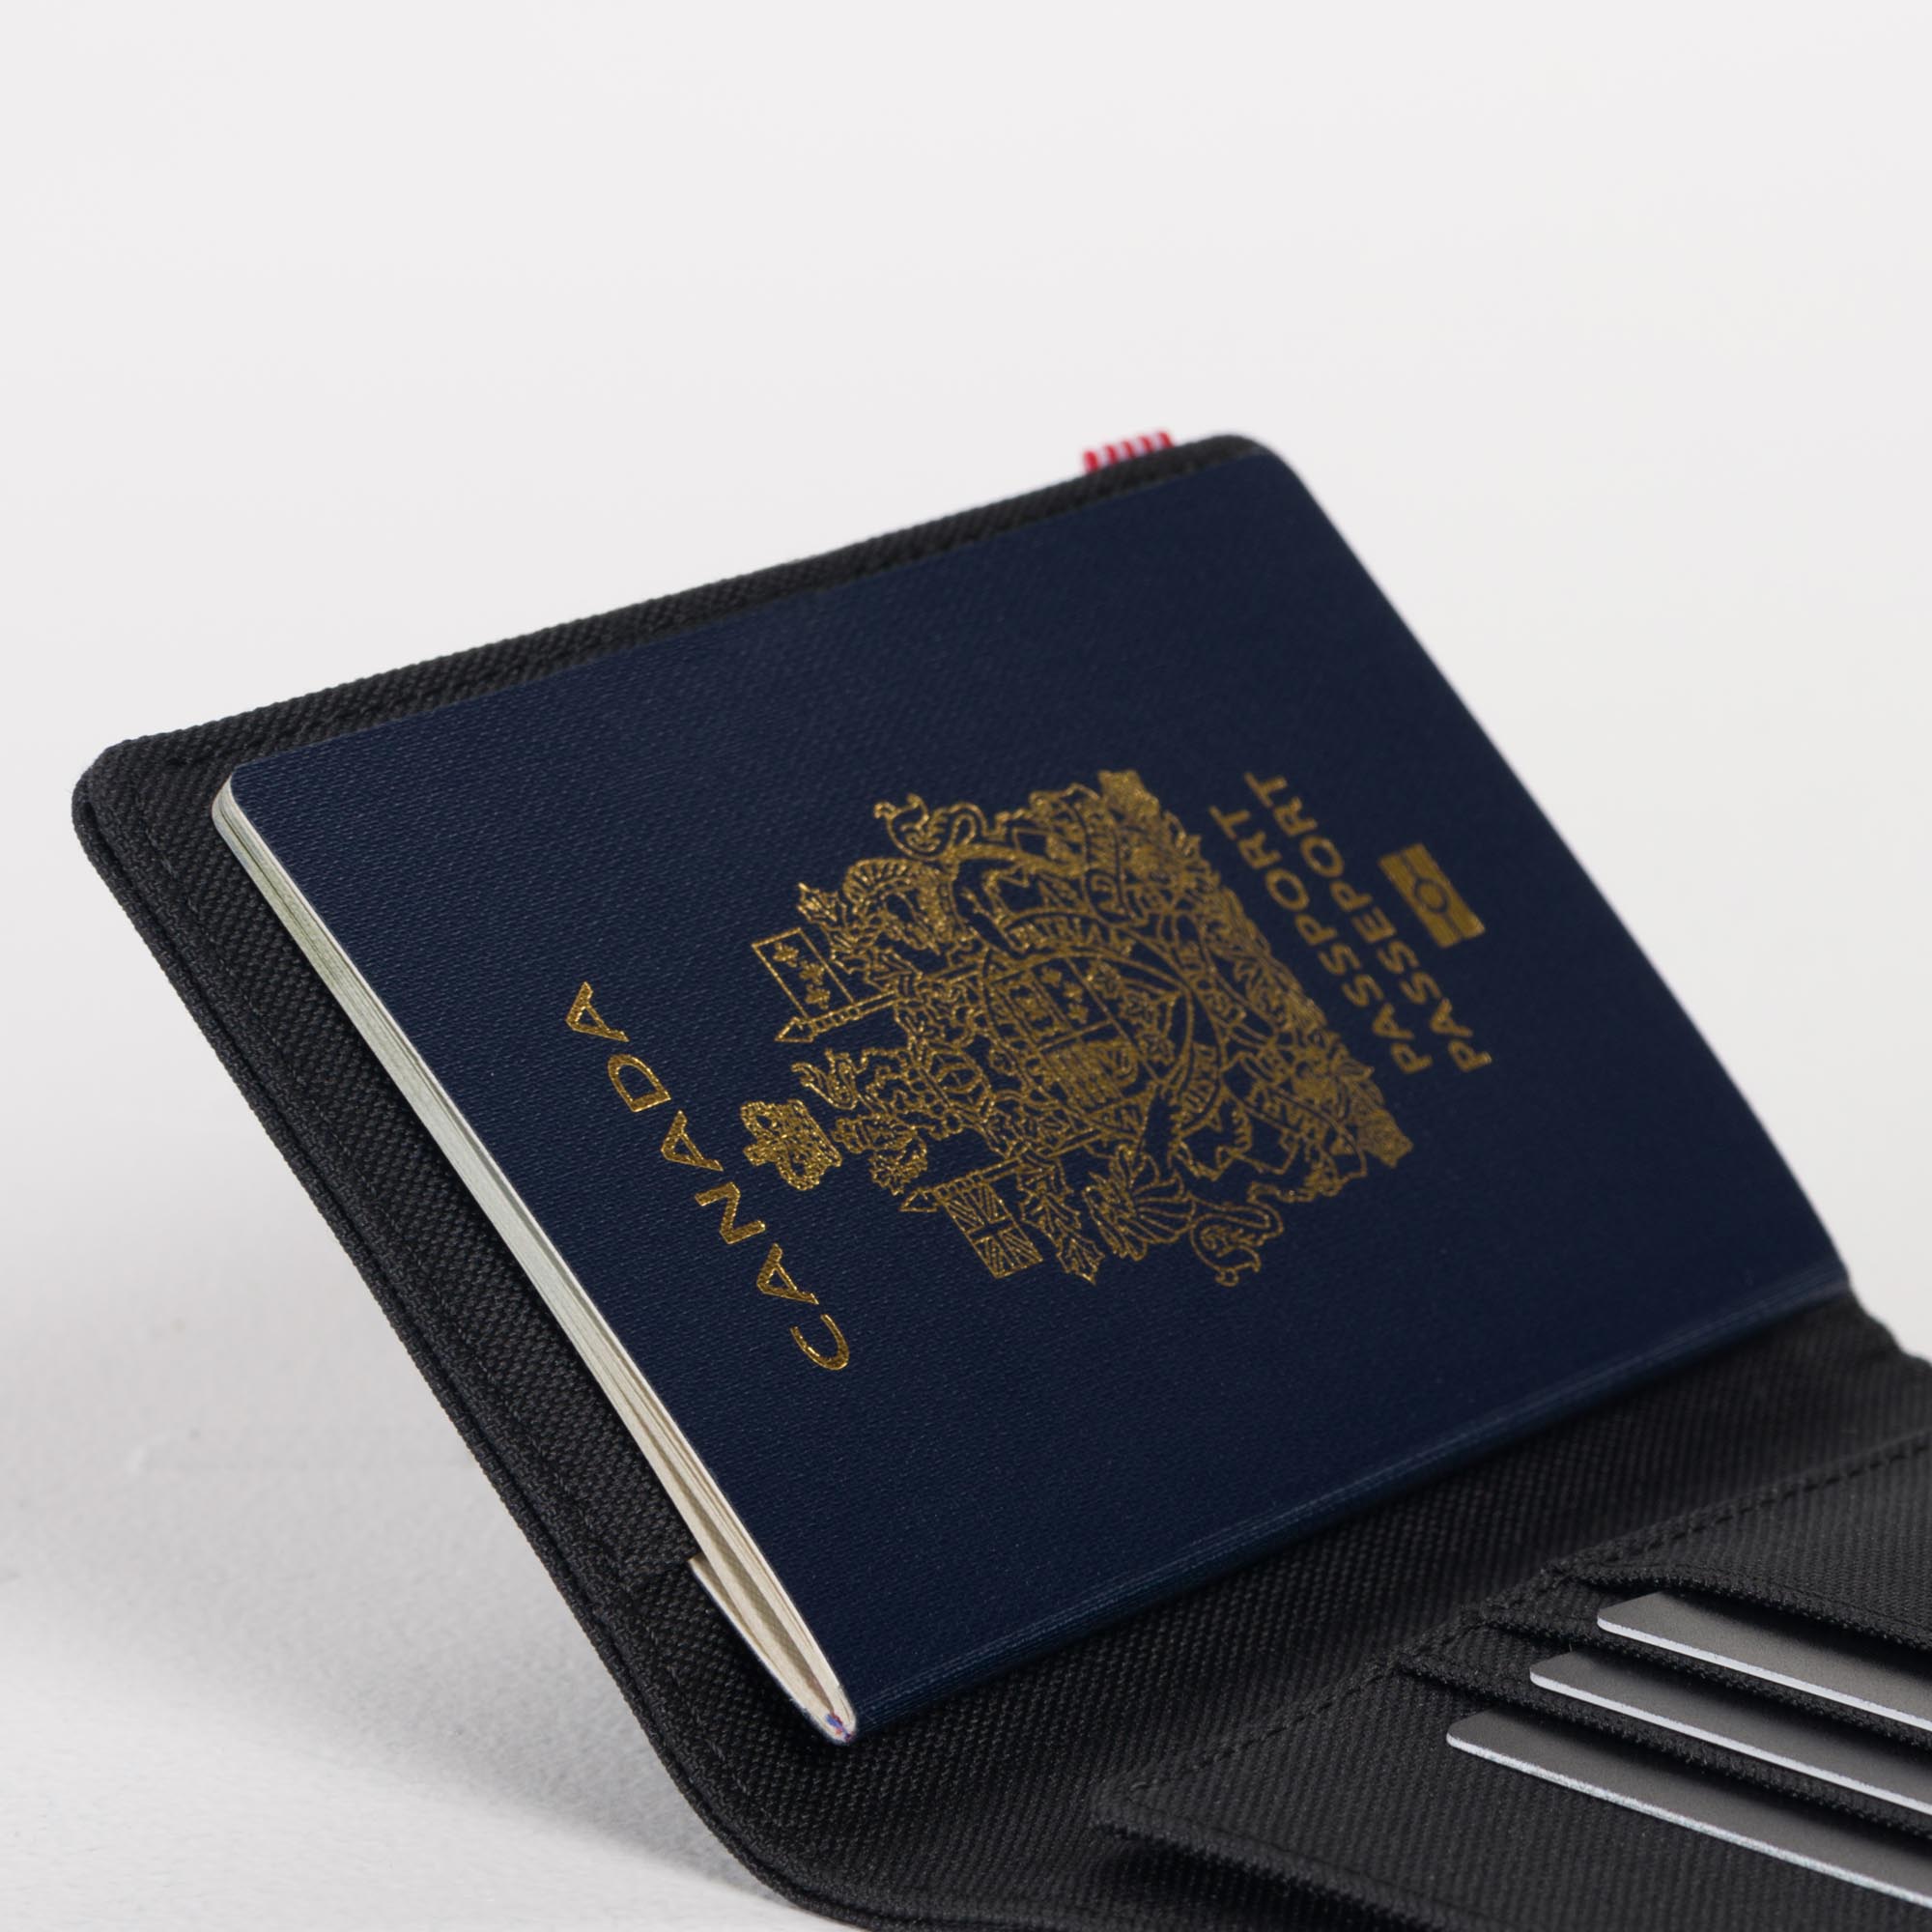 Black Canada Passport Wallet Genuine Leather Passport holder with Emblem